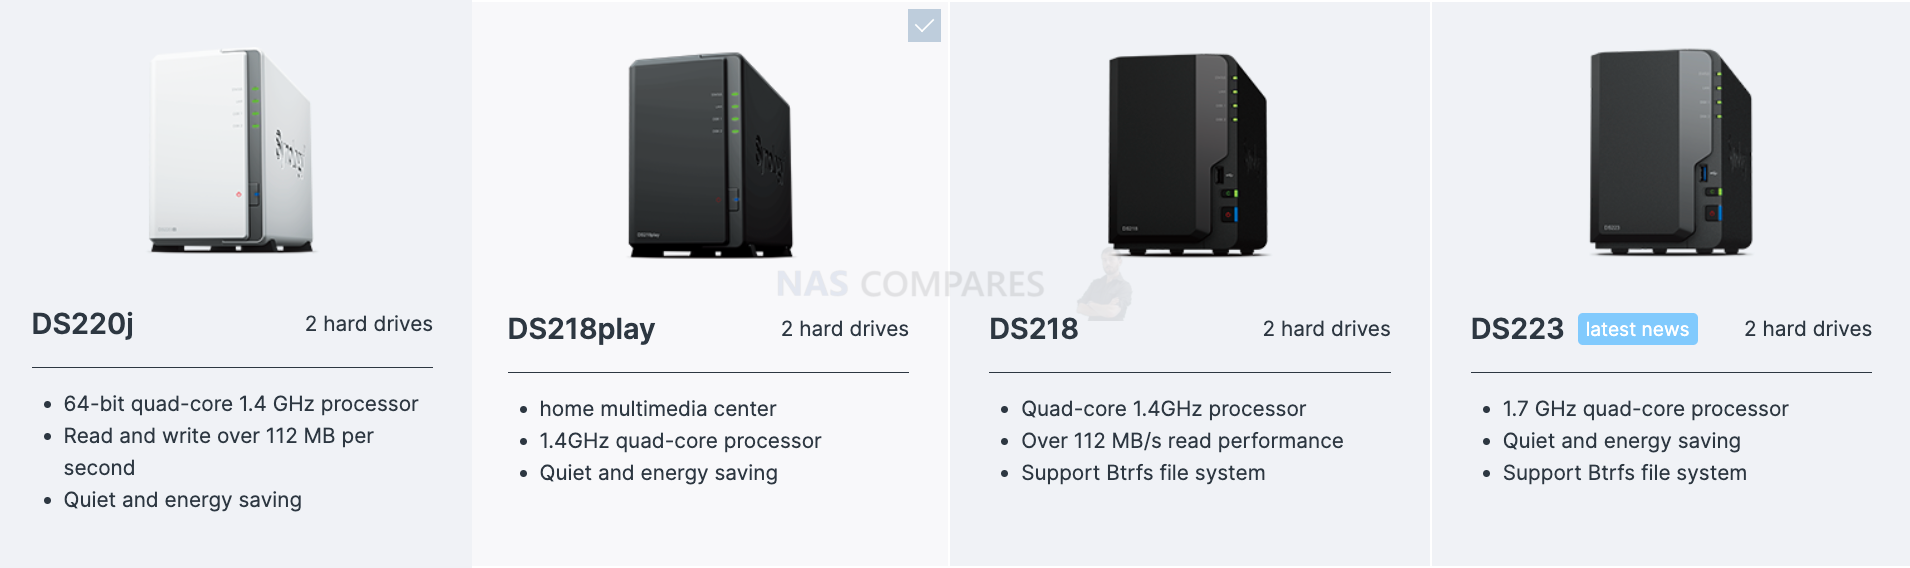 DS223 vs DS220j vs DS218 vs DS218play